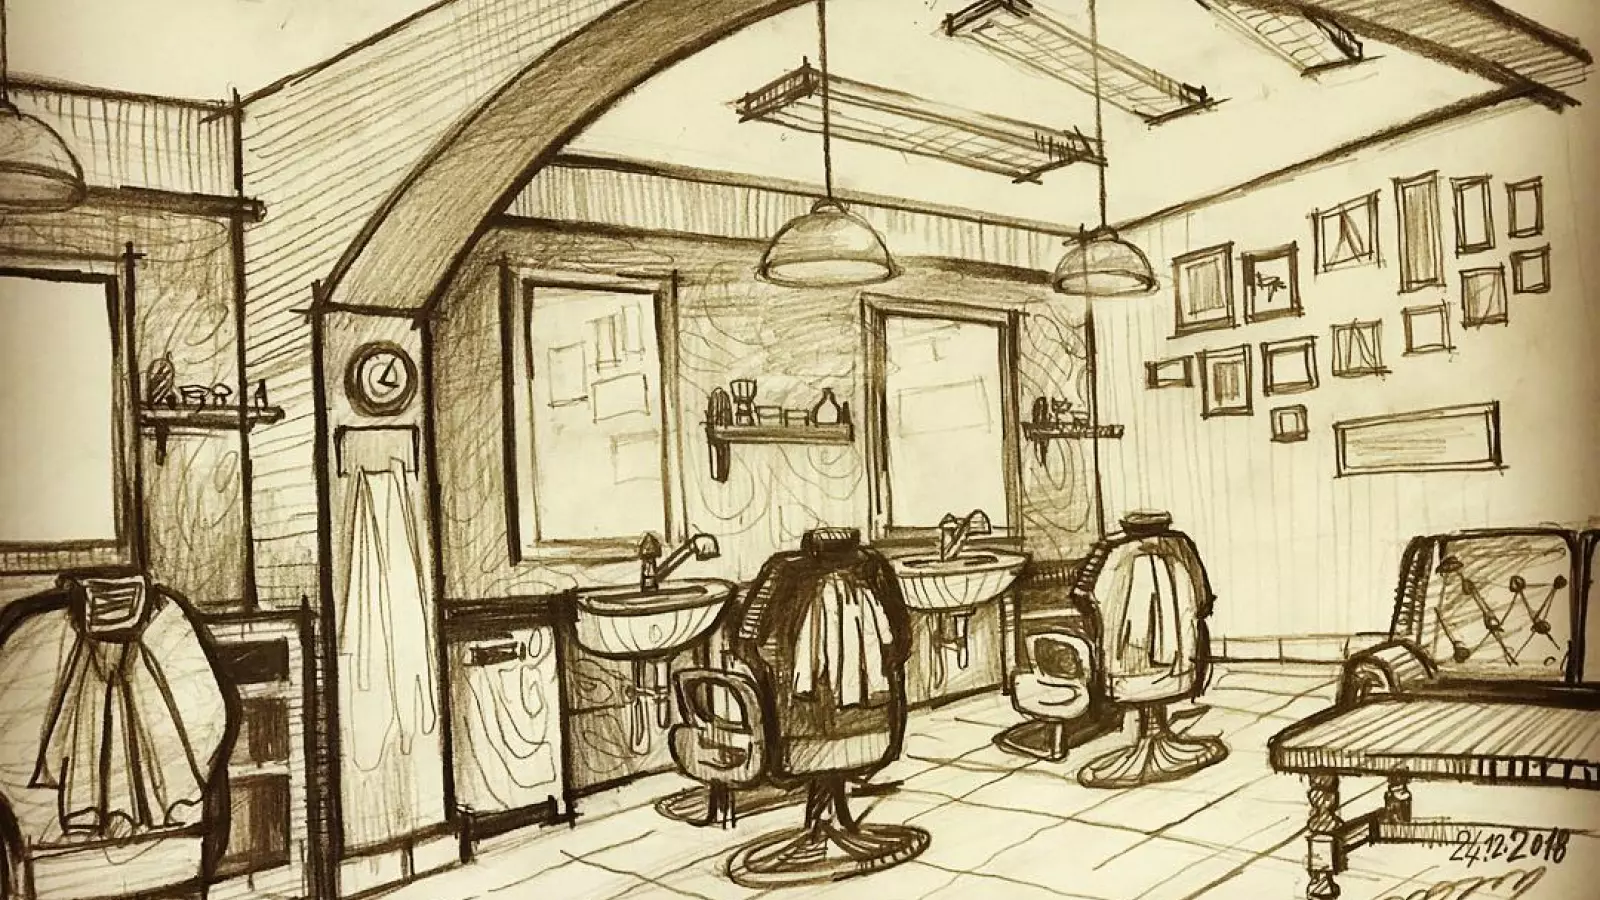 Holičství Old School Barbershop